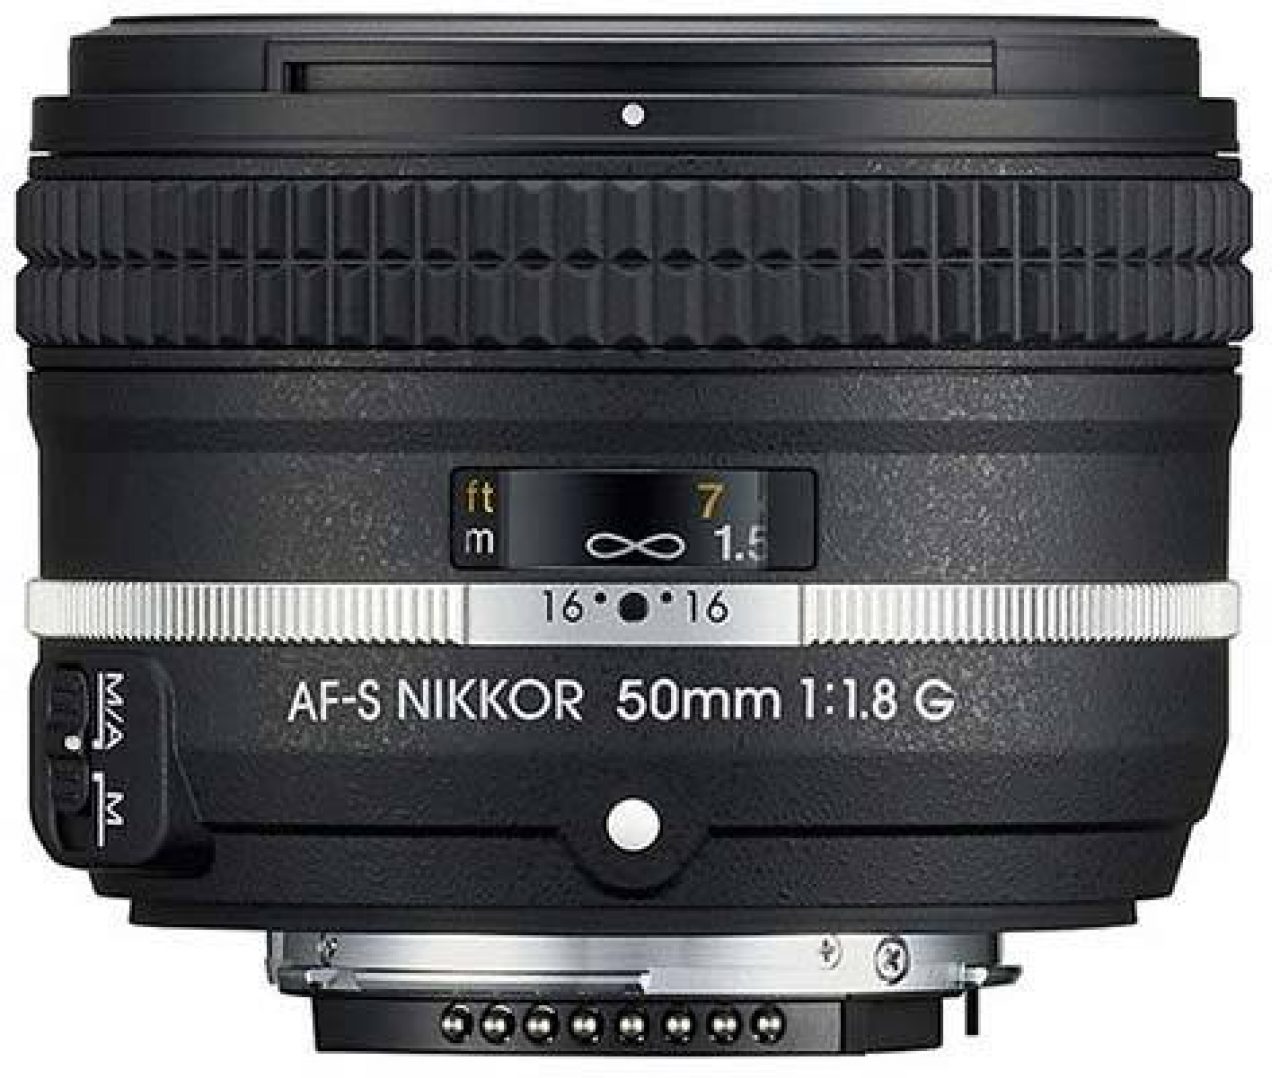 Nikon AF-S Nikkor 50mm f/1.8G (Special Edition) Review 